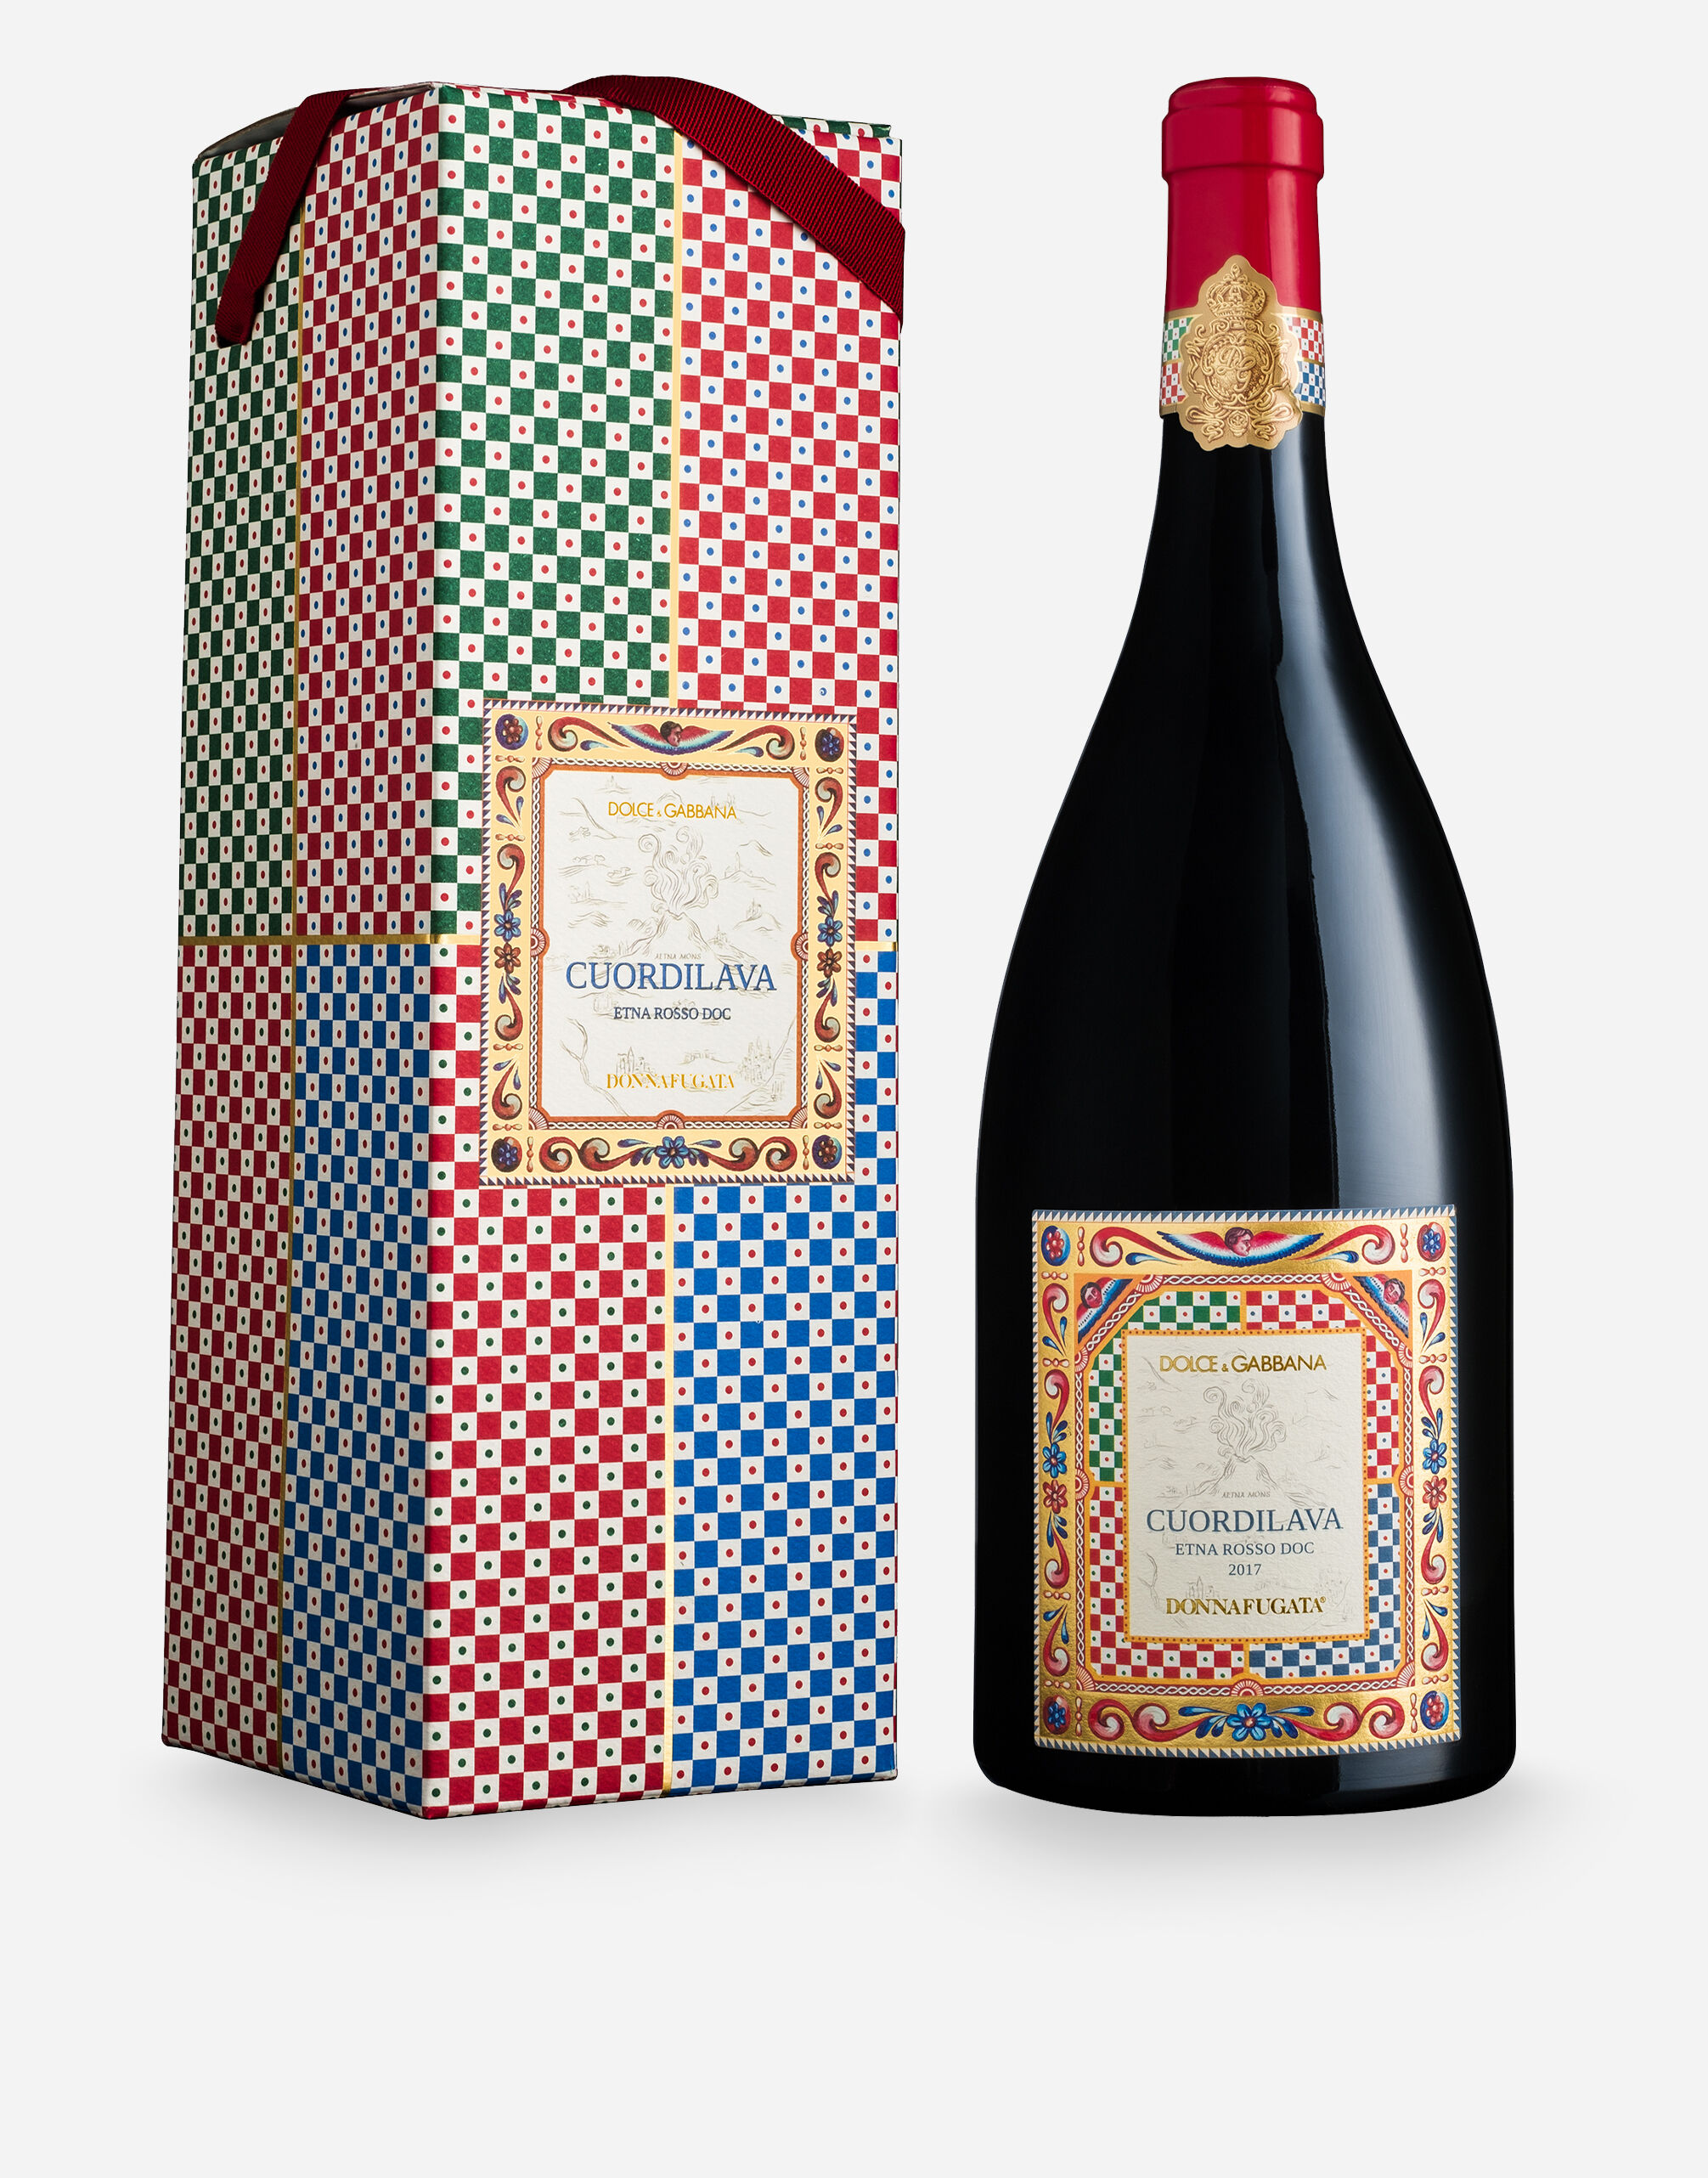 Dolce & Gabbana CUORDILAVA - Etna Rosso Doc (Magnum) - Single Box Multicolor PW1299PWRTC